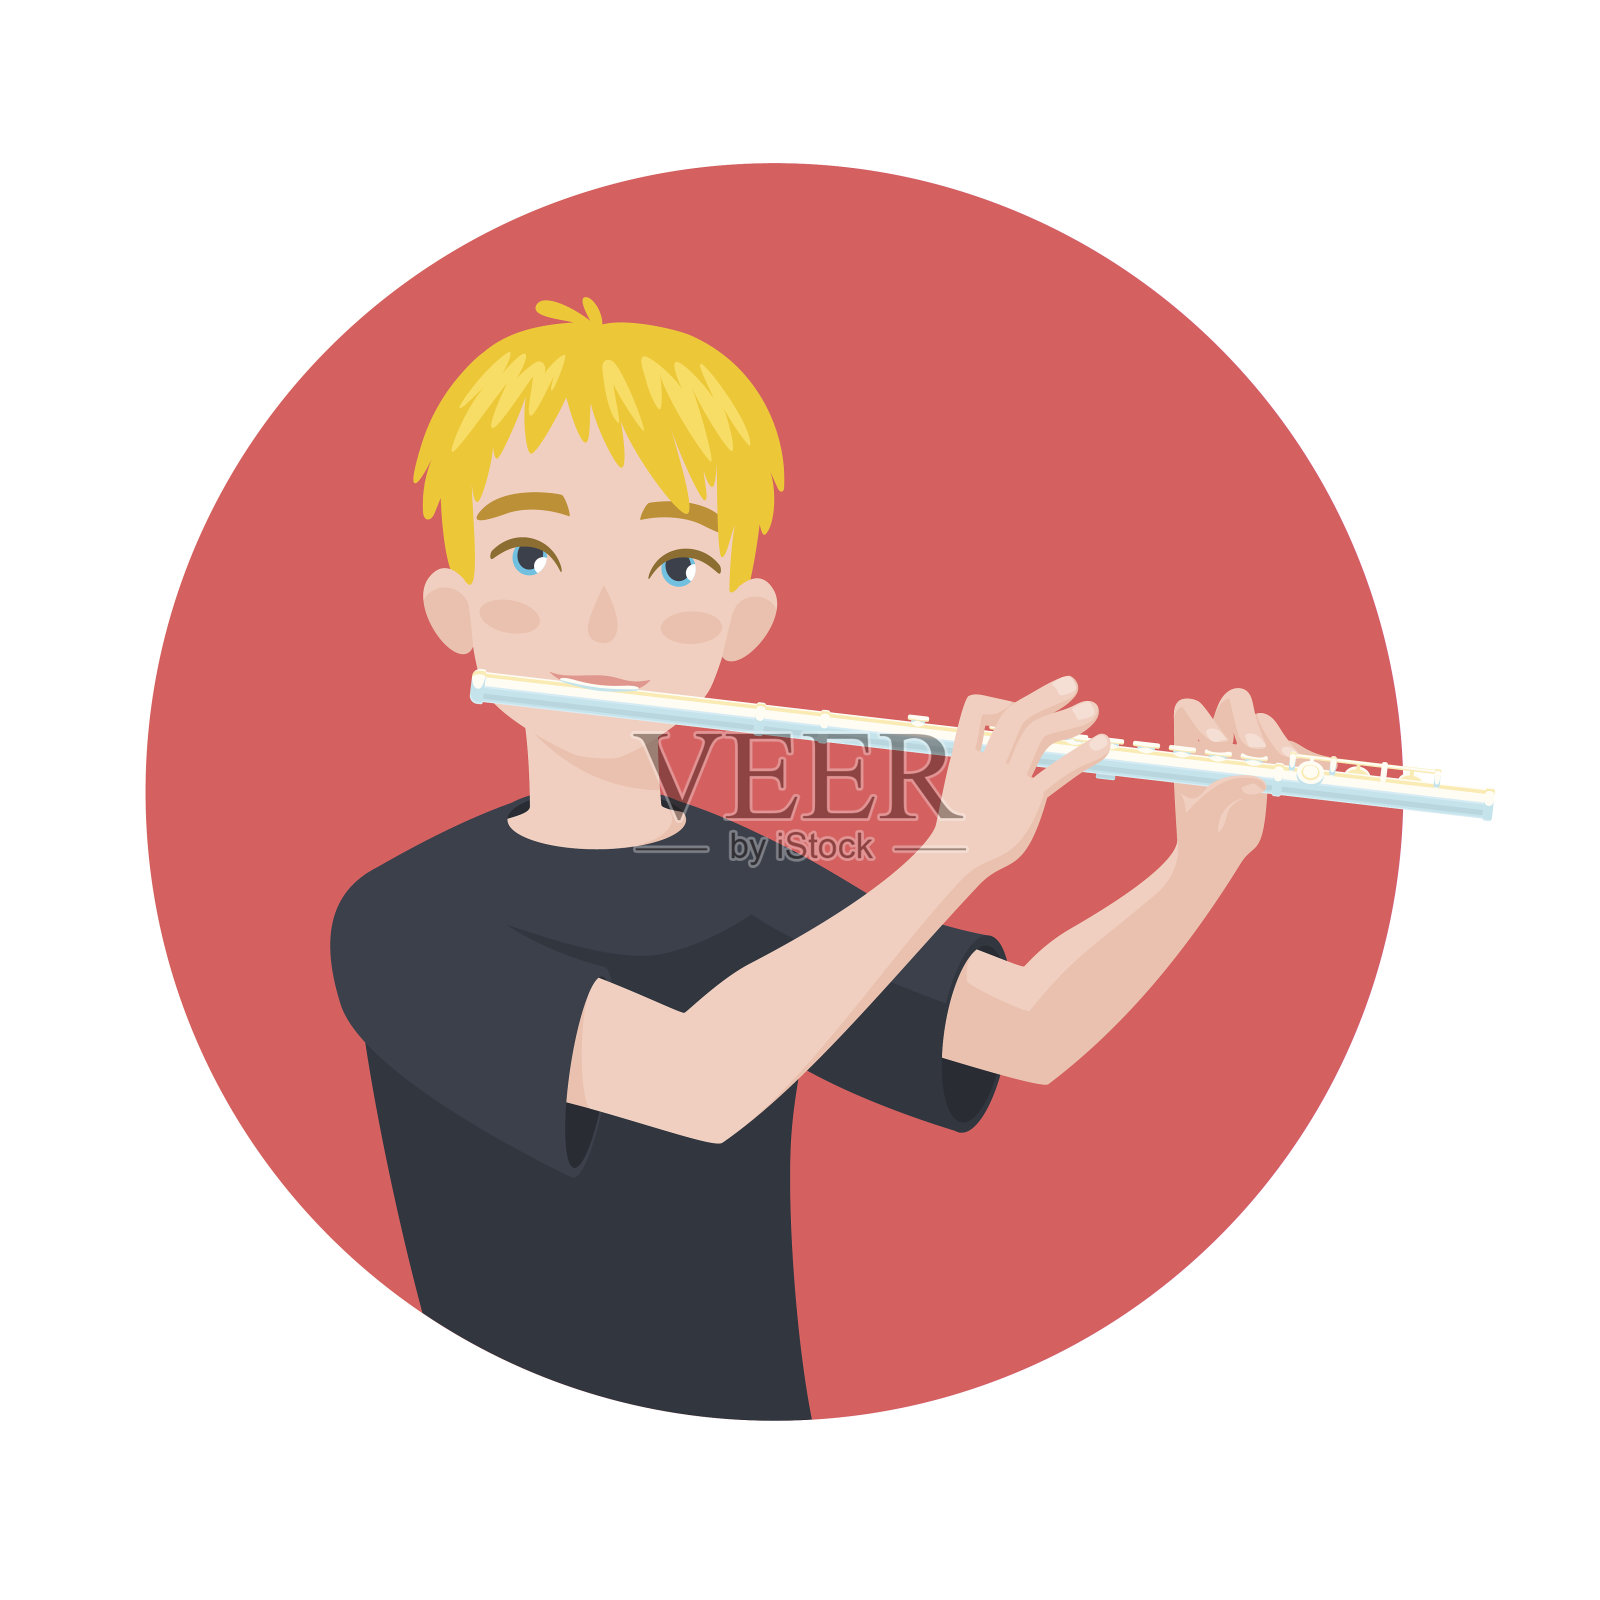 音乐家在演奏长笛。男孩长笛手的灵感是演奏古典乐器。向量。插画图片素材